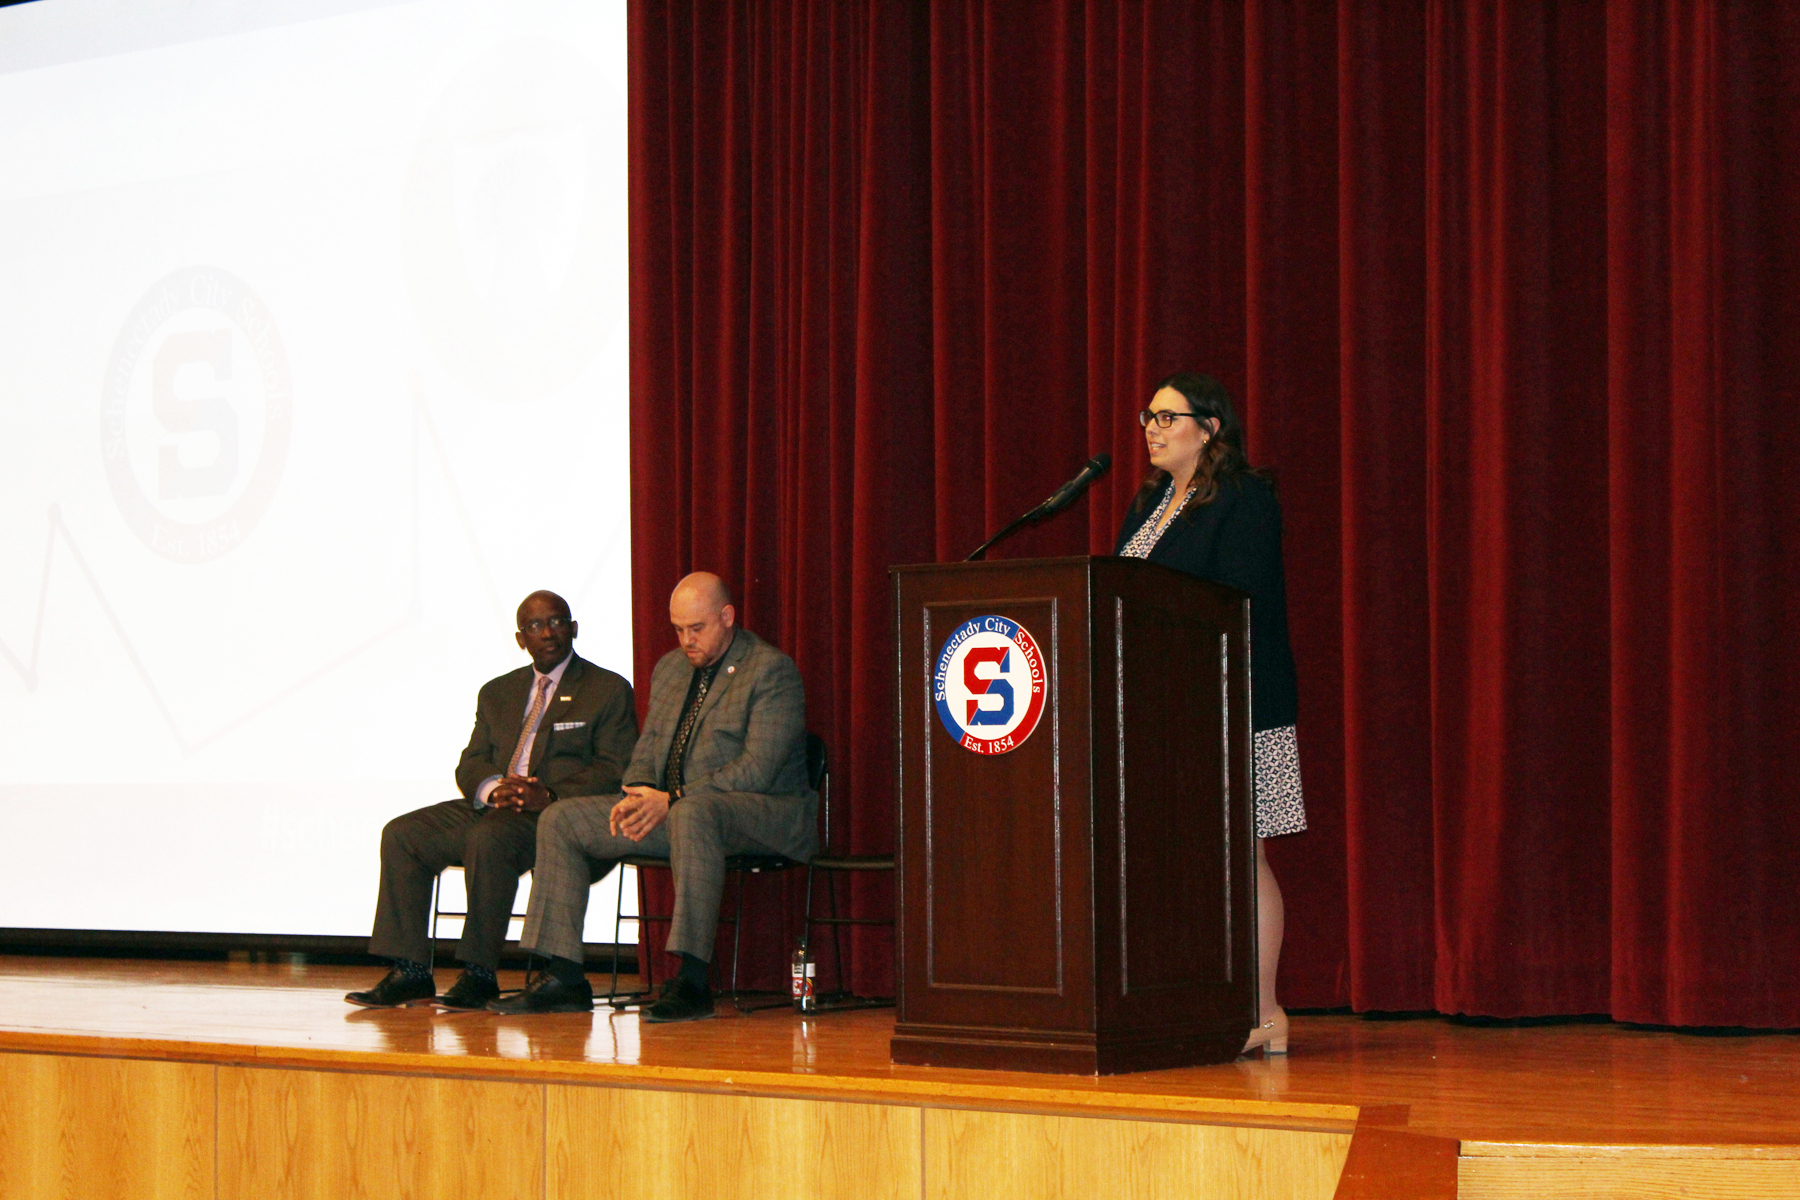 Laura Sprague speaking in Schenectady High School auditorium